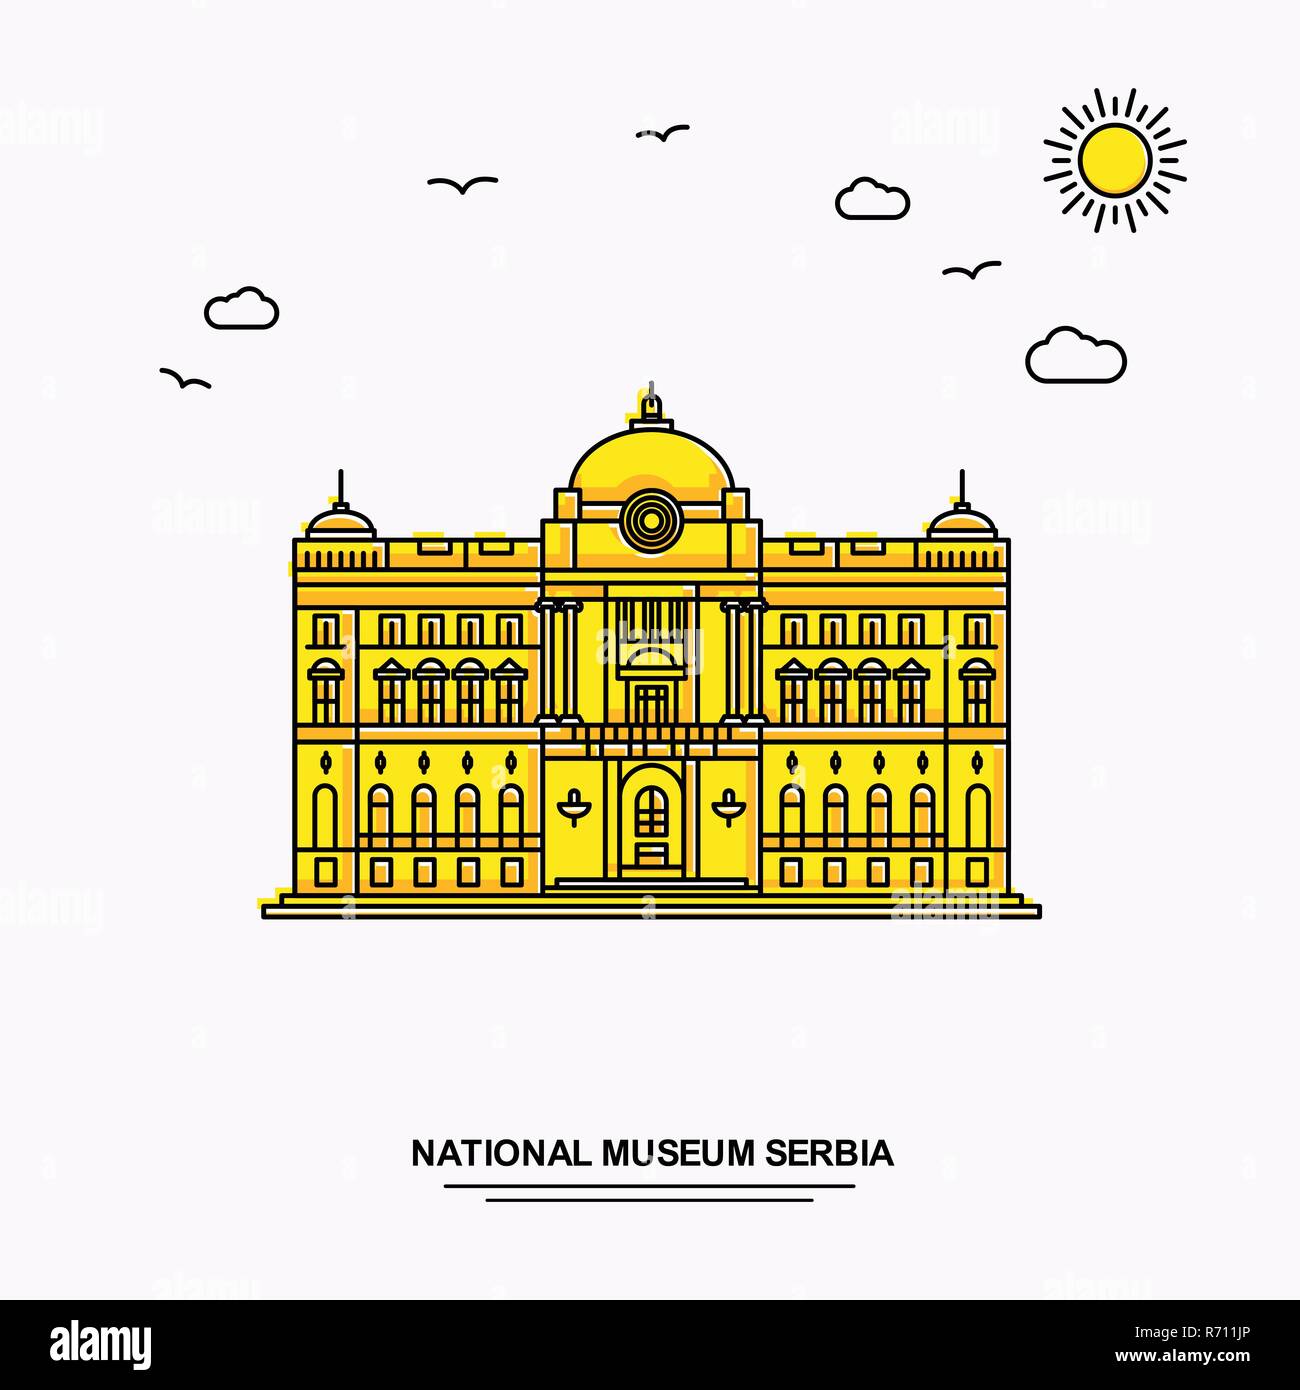 Musée National Monument SERBIE Modèle d'affiche. Illustration jaune Voyage du Monde historique en style de ligne avec beauture parlons nature Illustration de Vecteur